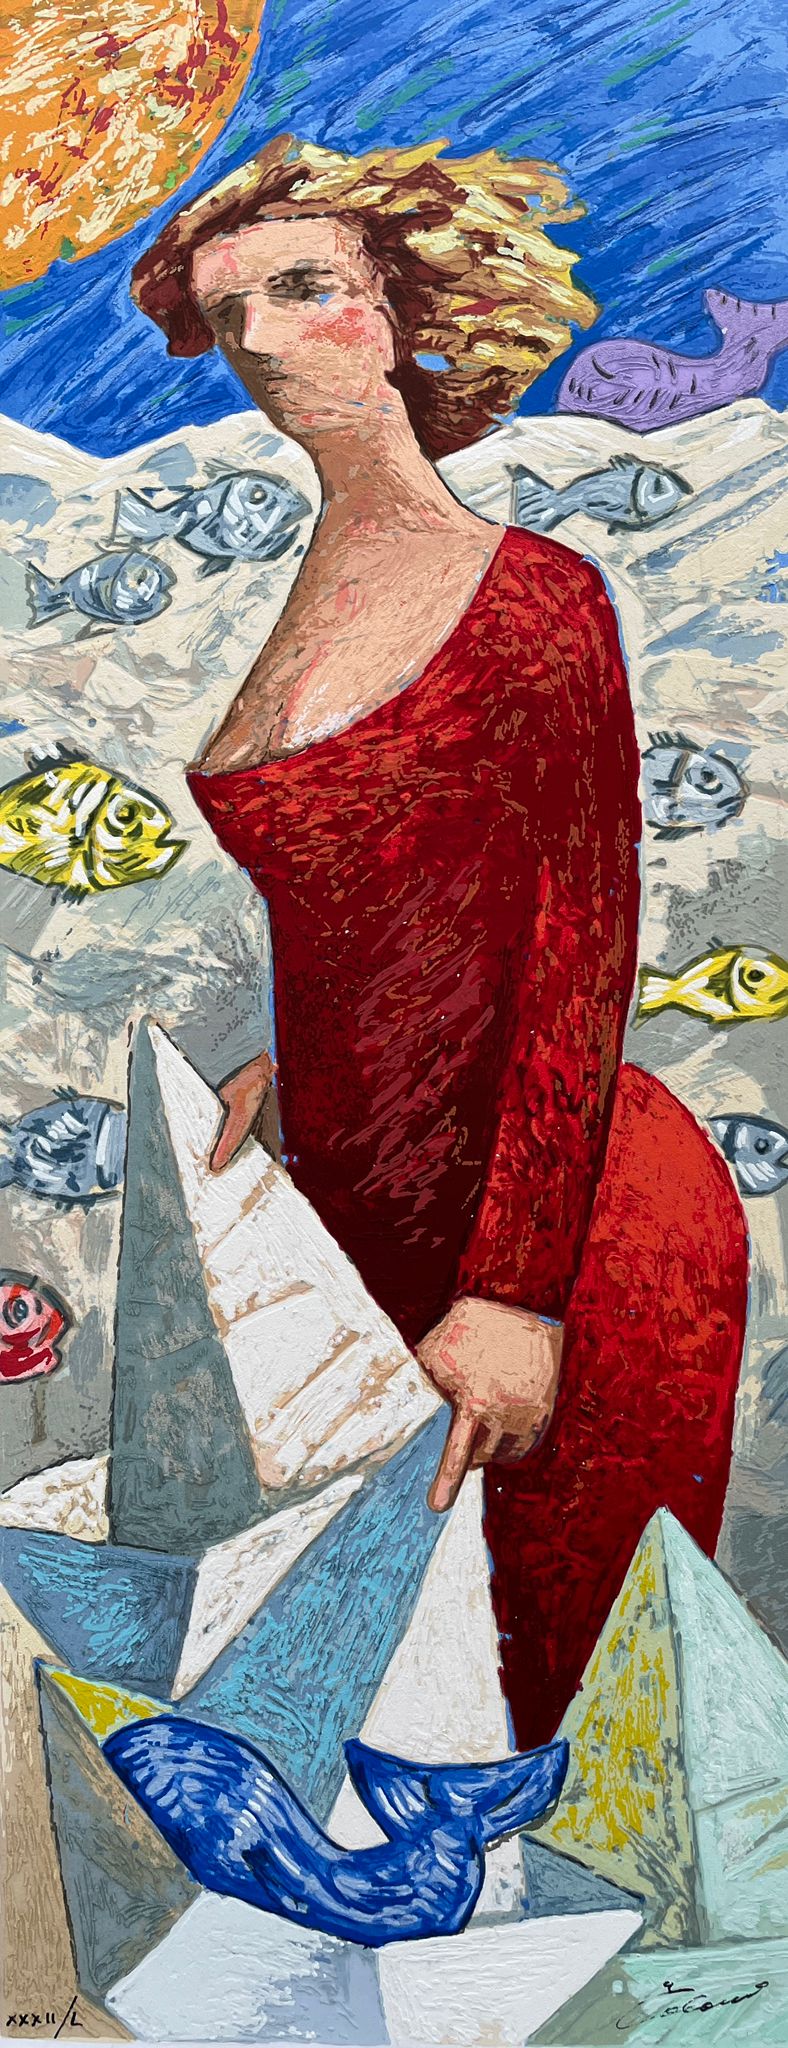 Le Barche del Viaggio: Una Donna | Giampaolo Talani - Arte Focus™